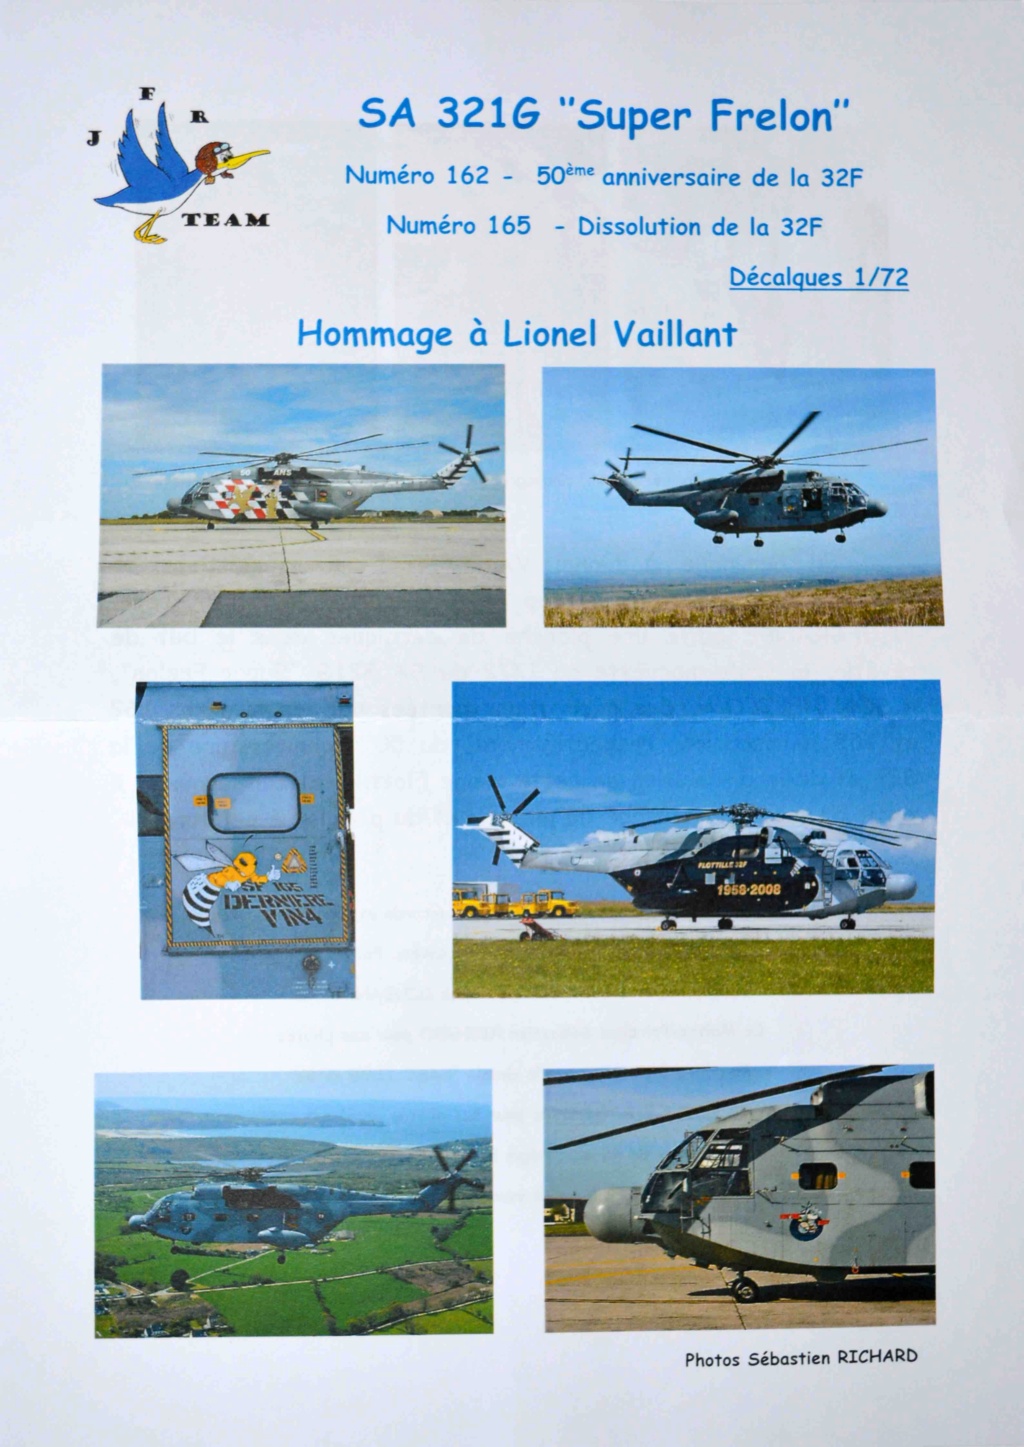 JFR Team SA 321G Super Frelon "Hommage à Lionel Vaillant" 1/72 Dsc_0926